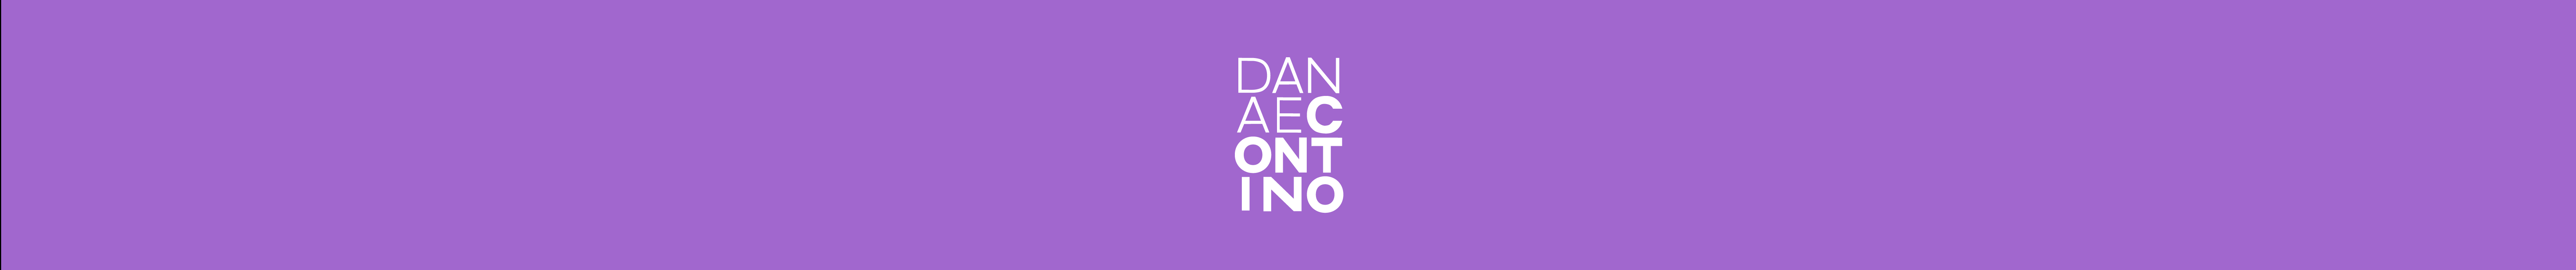 Danae Contino's profile banner